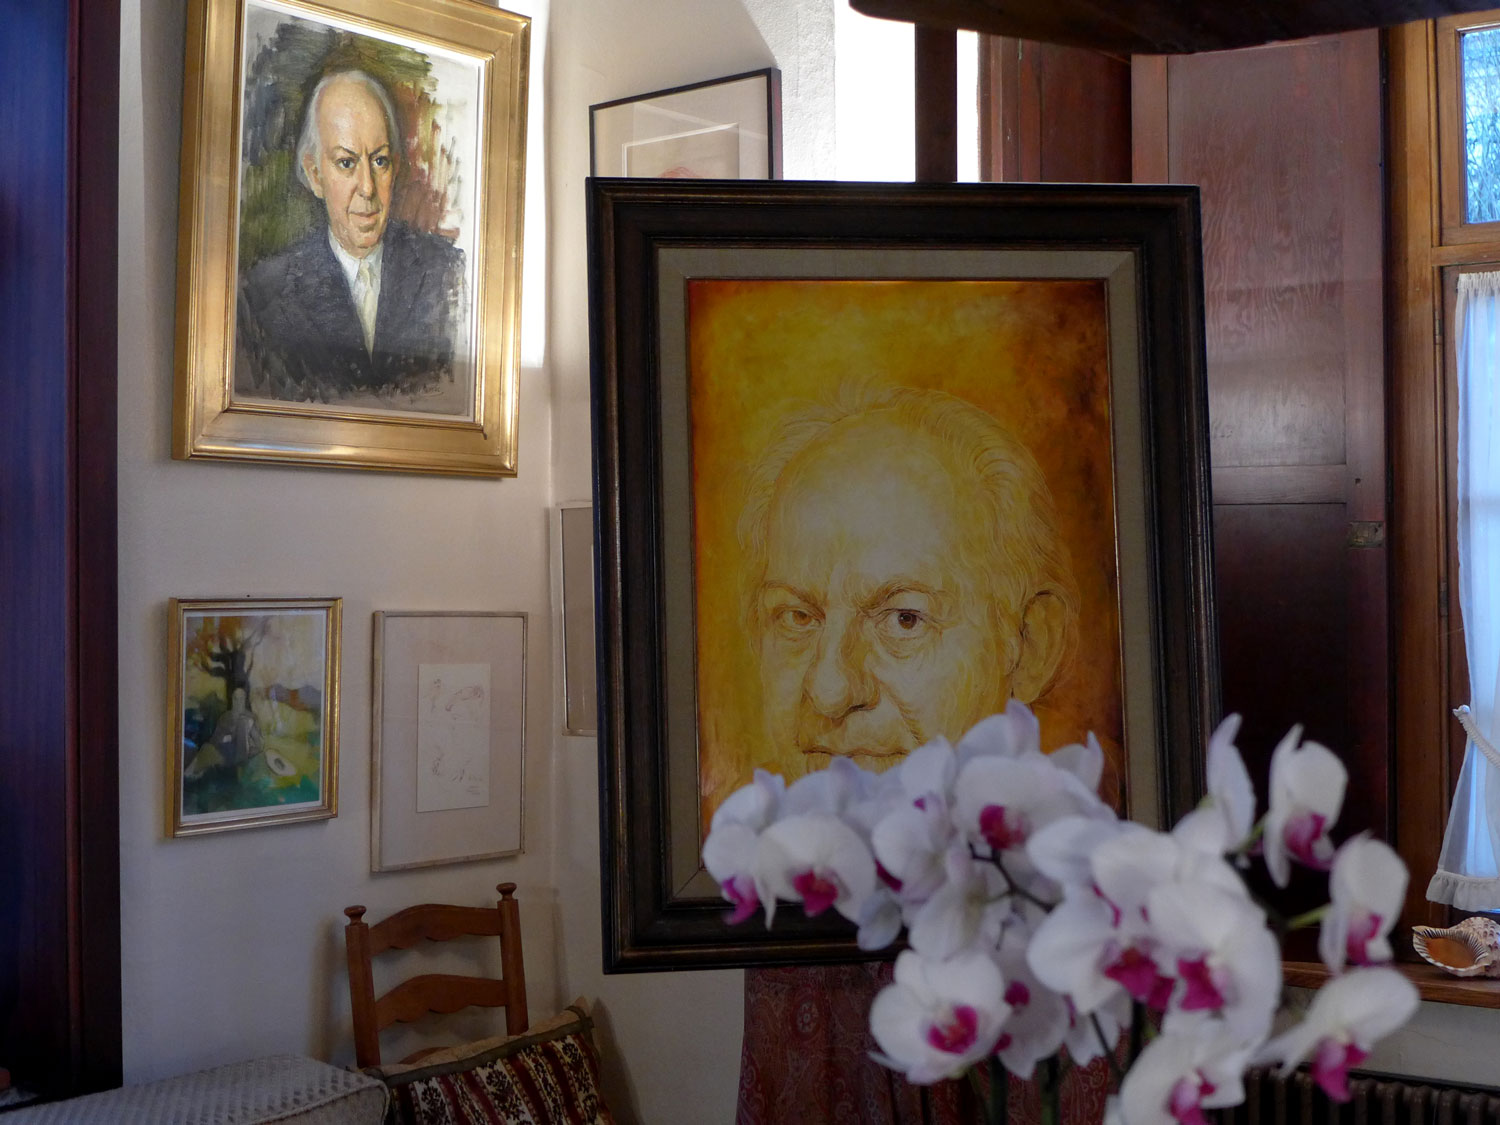 Dans le salon, il y a beaucoup de portraits réalisés par des amis peintres. Le portrait sur le chevalet a été réalisé par Felix De Boeck